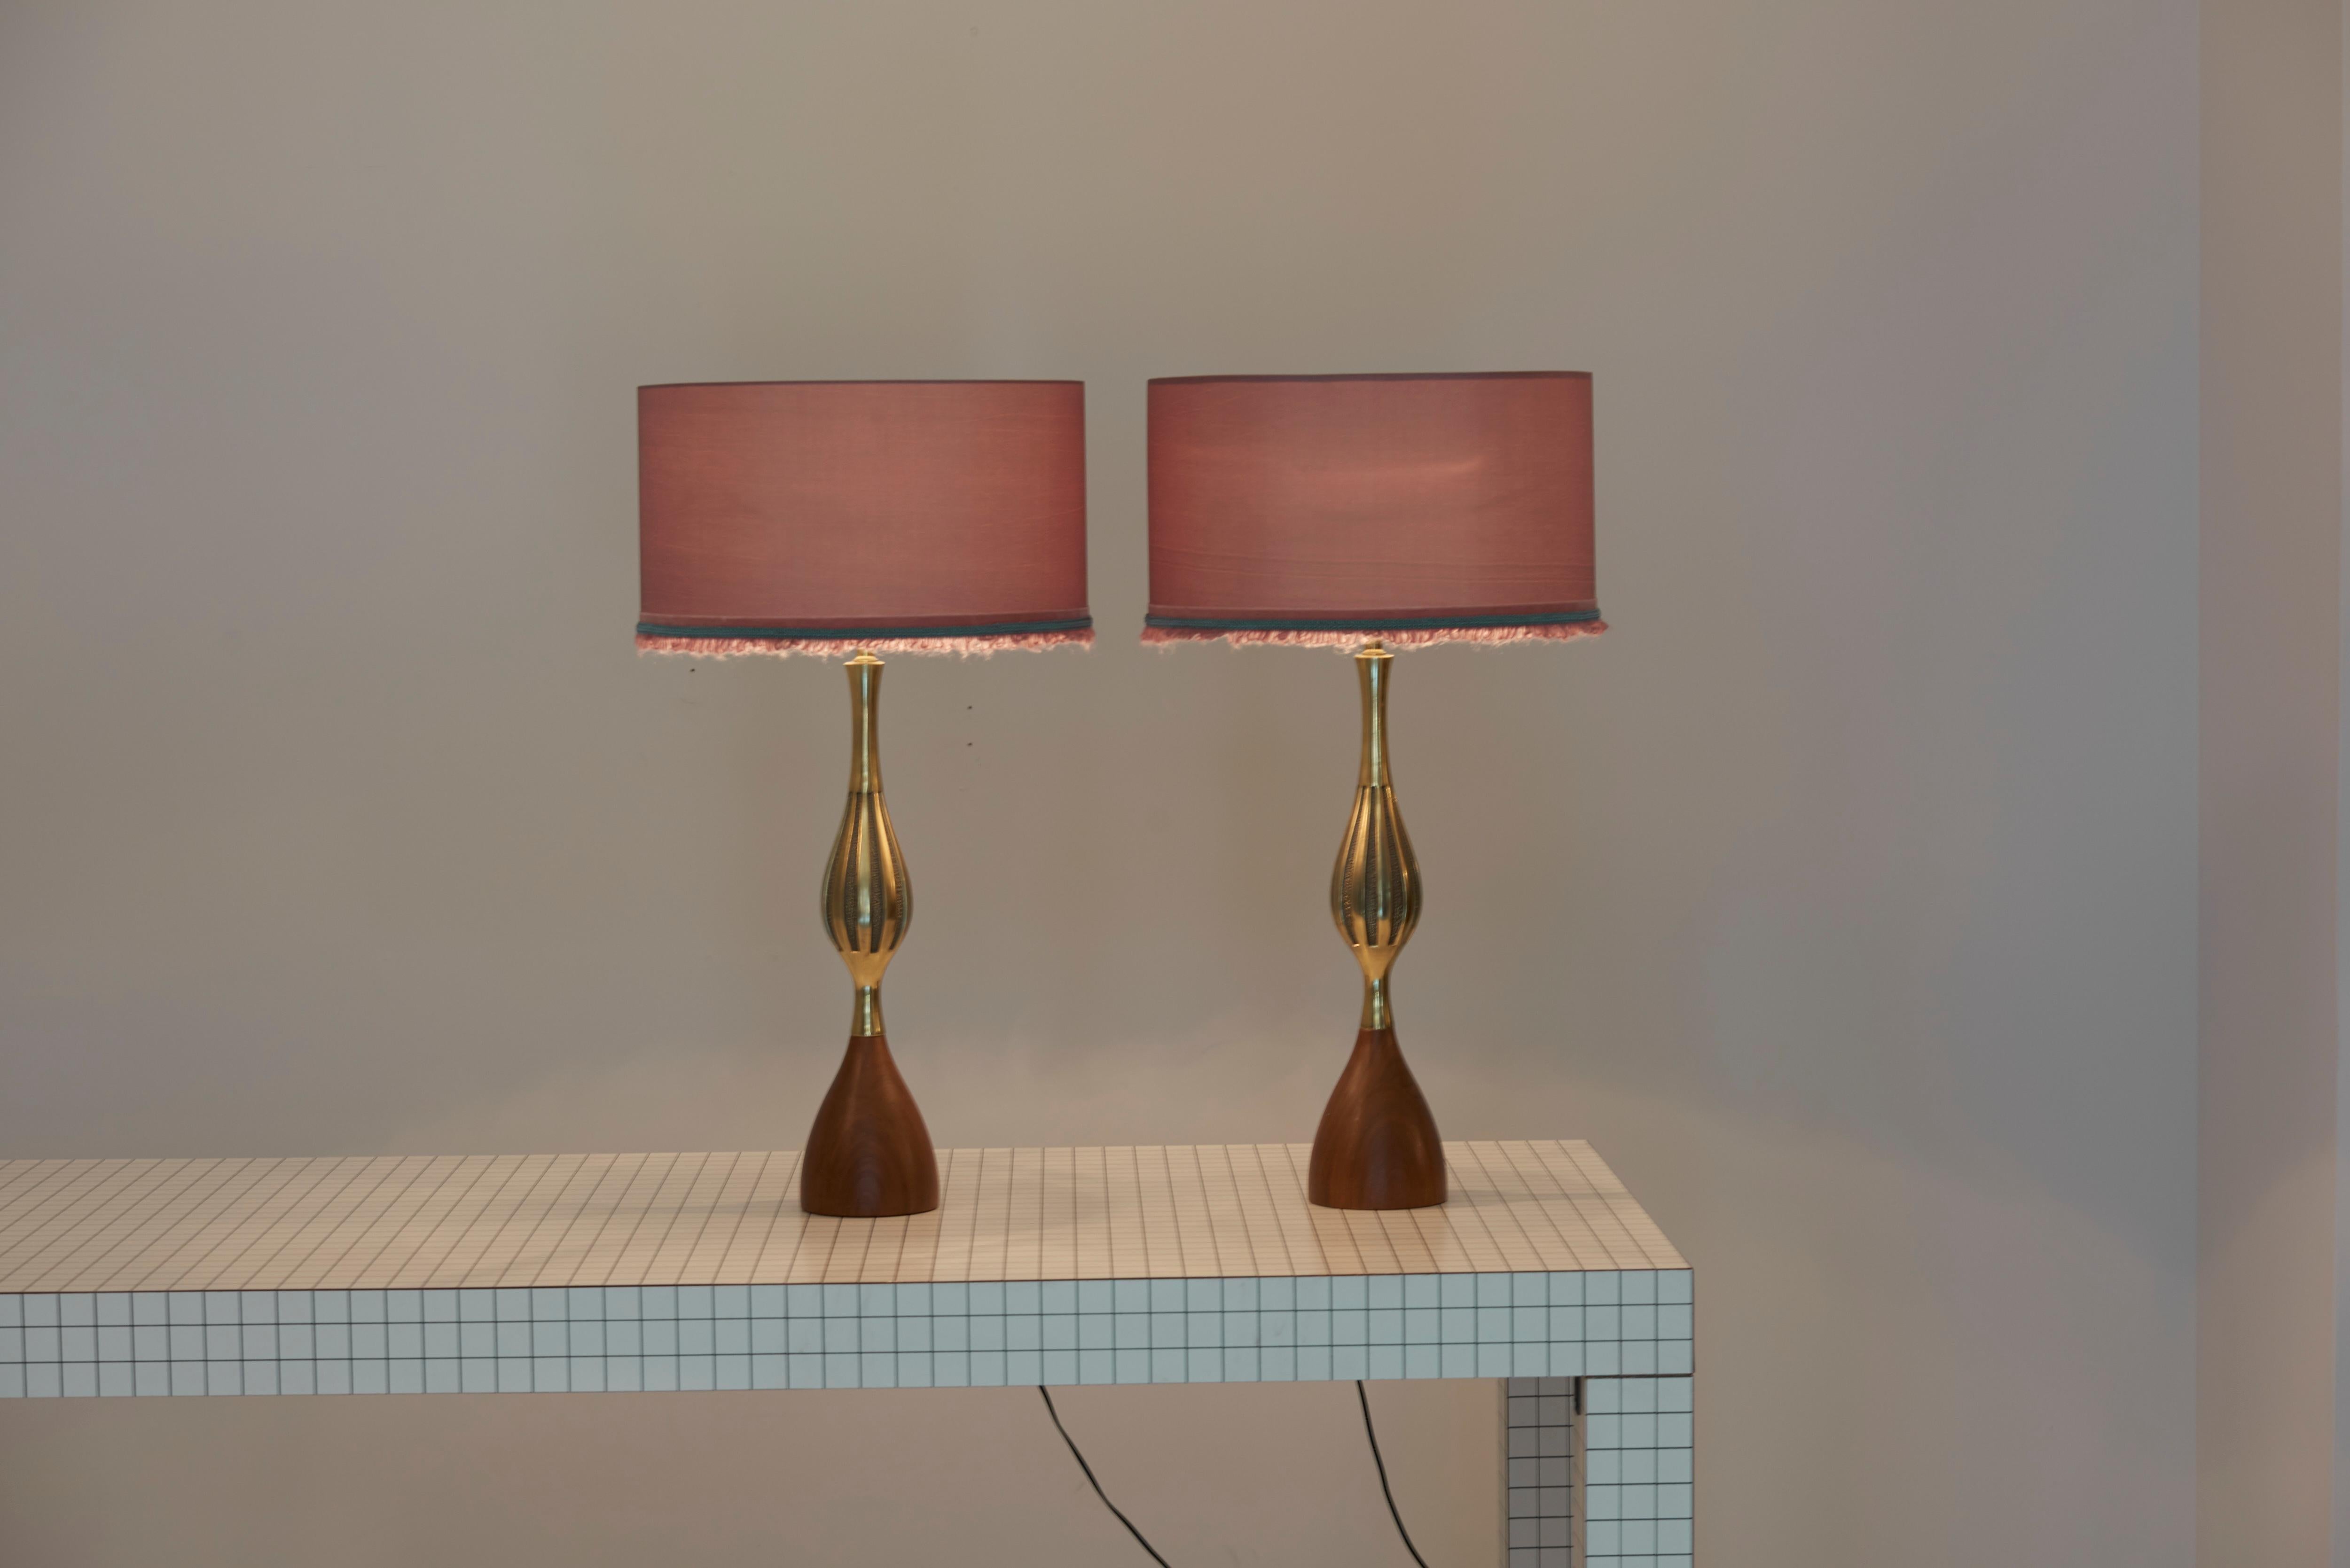 Paire de grandes lampes de table en laiton et noyer, conçues par Tony Paul et fabriquées par Westwood Lighting.
Y compris de nouveaux abat-jour personnalisés.

1 x douille E27 / chaque.

Remarque : la lampe doit être installée par un professionnel